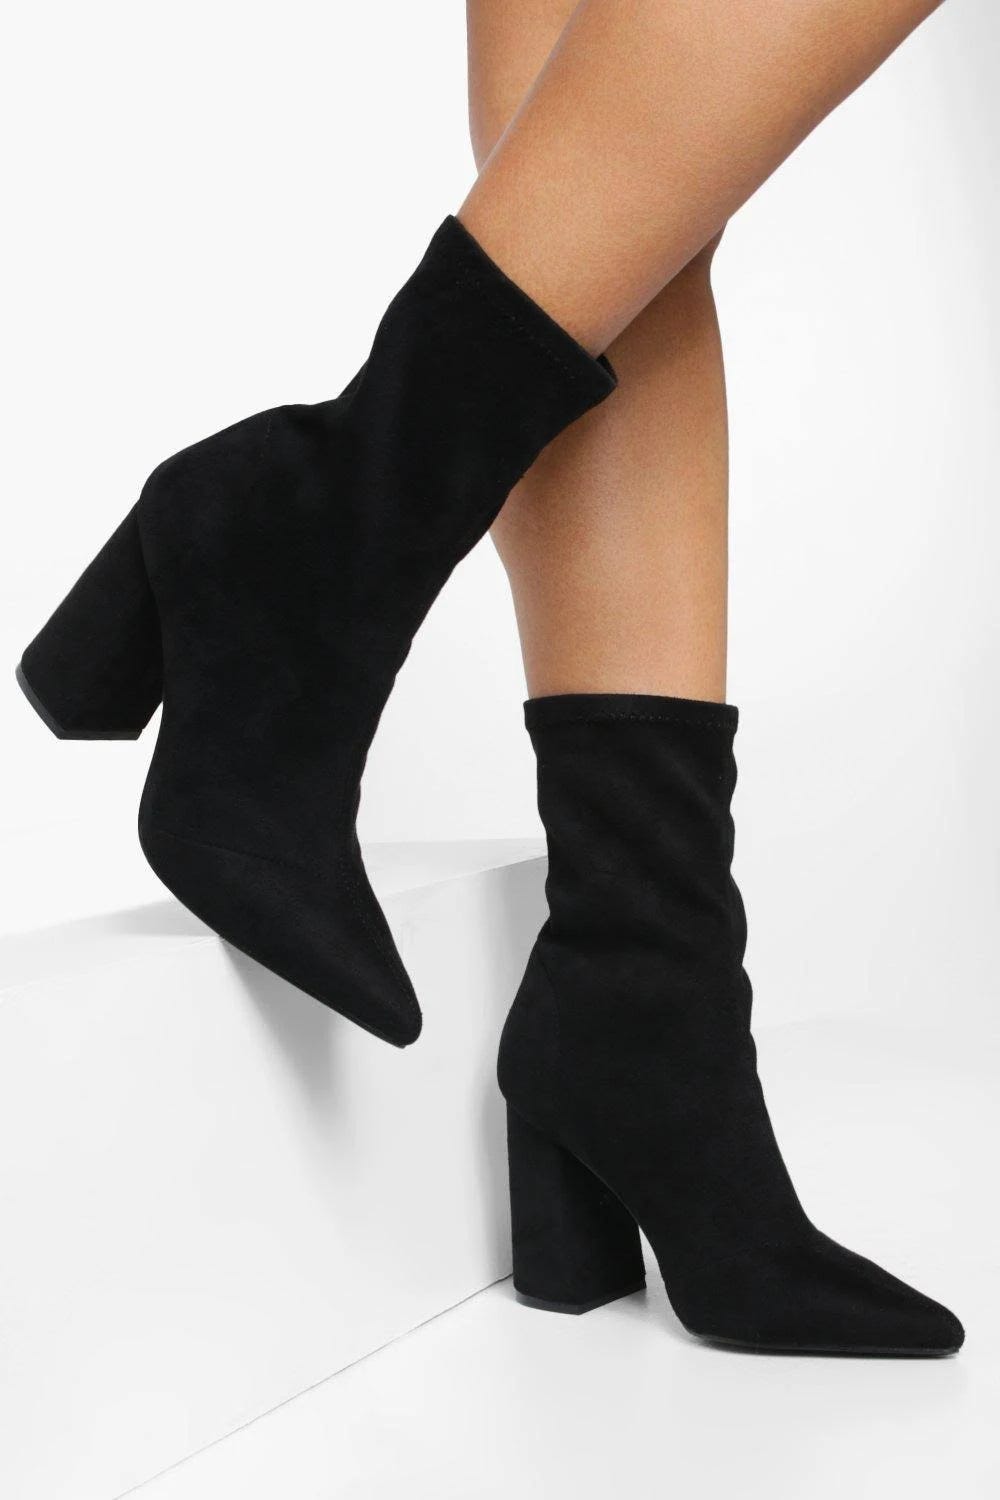 Black Sock Boots Low Heel | Image